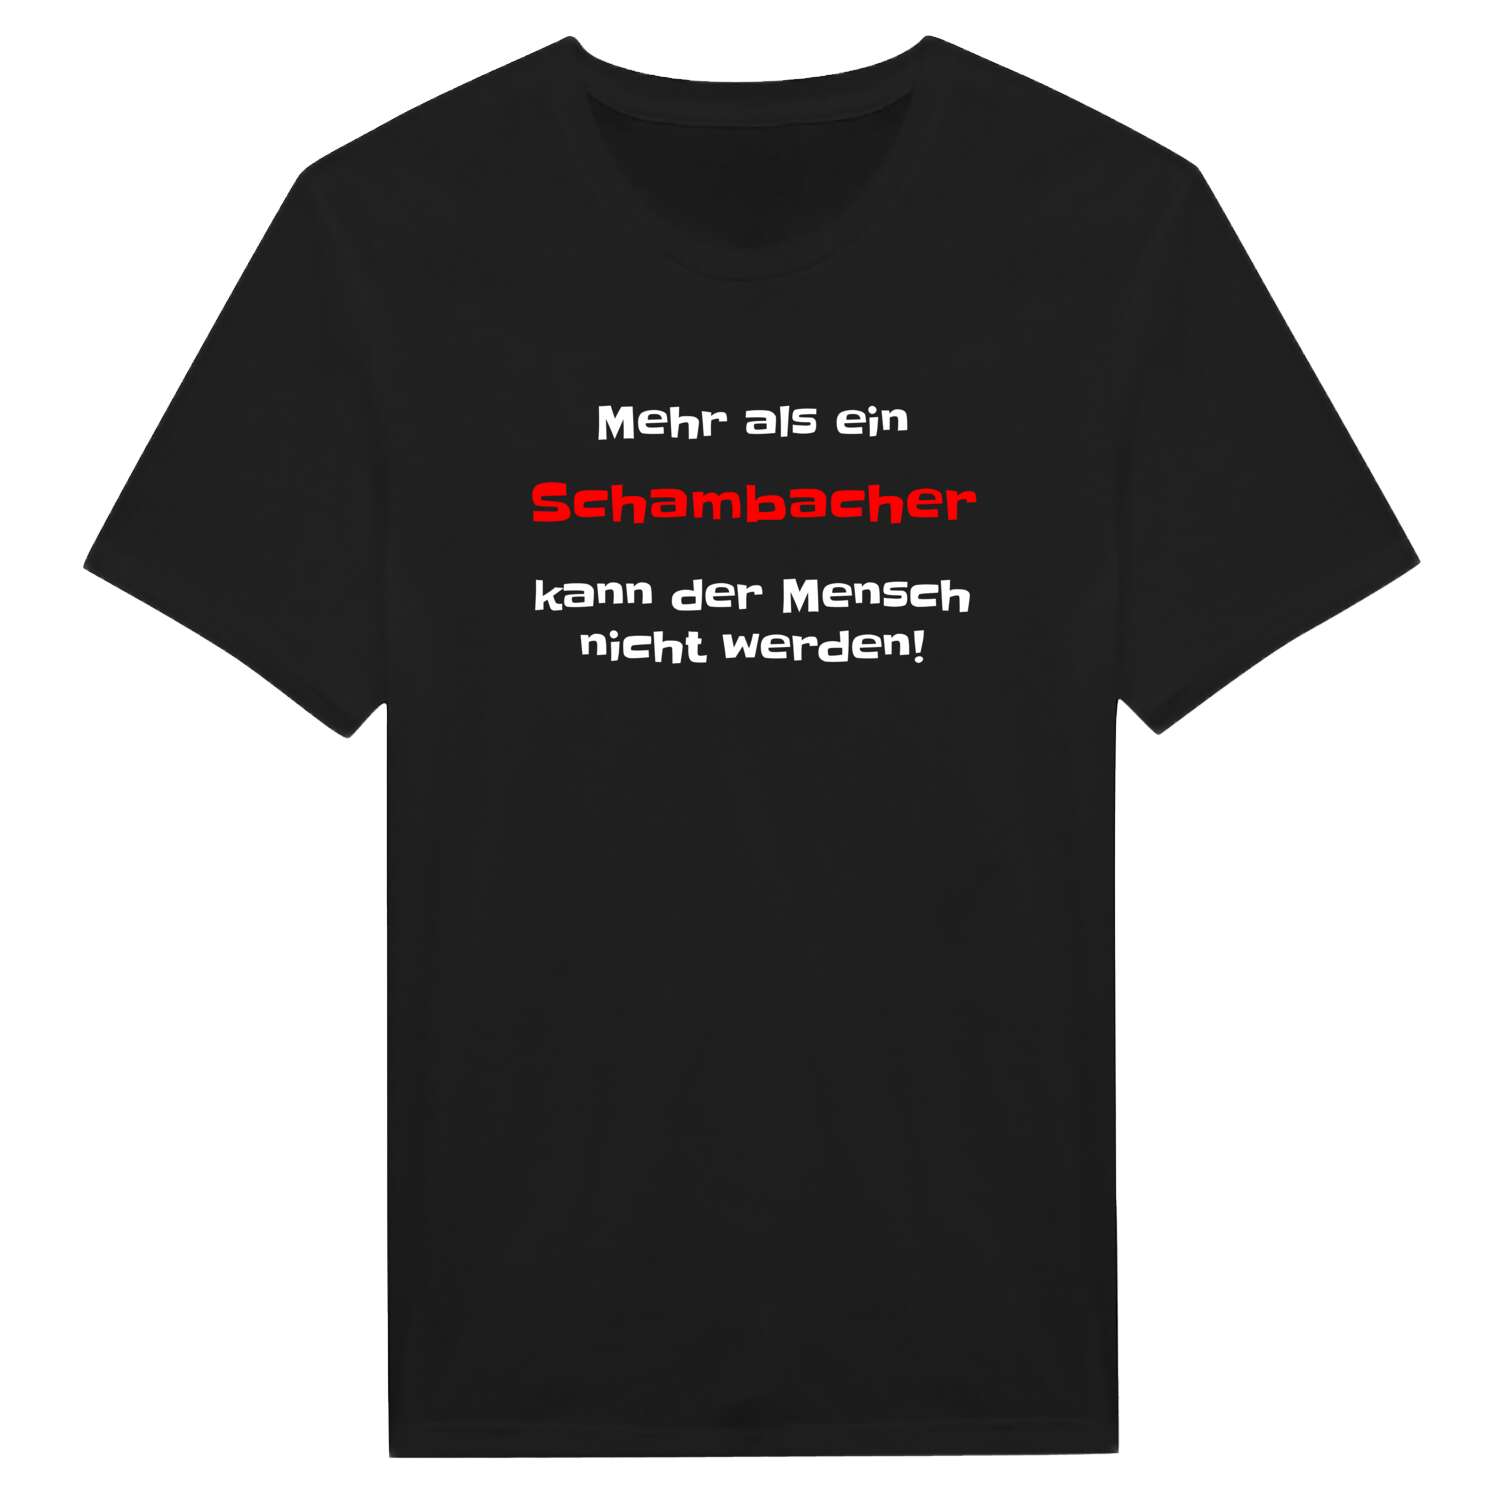 Schambach T-Shirt »Mehr als ein«